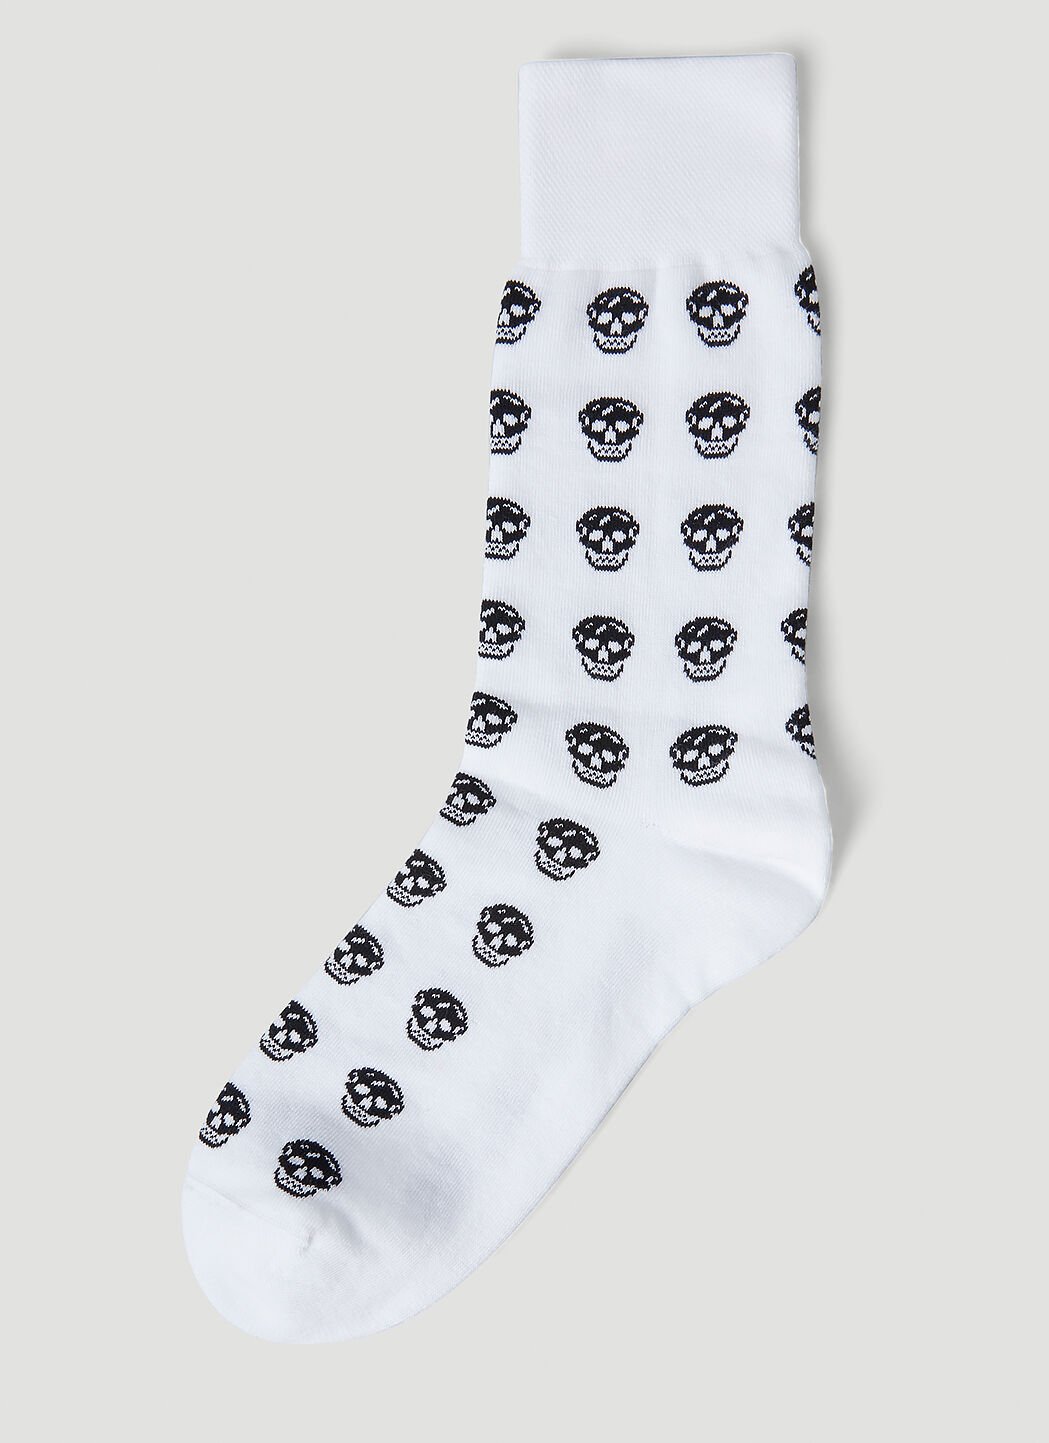 Alexander McQueen Skull Motif Socks Black amq0152002